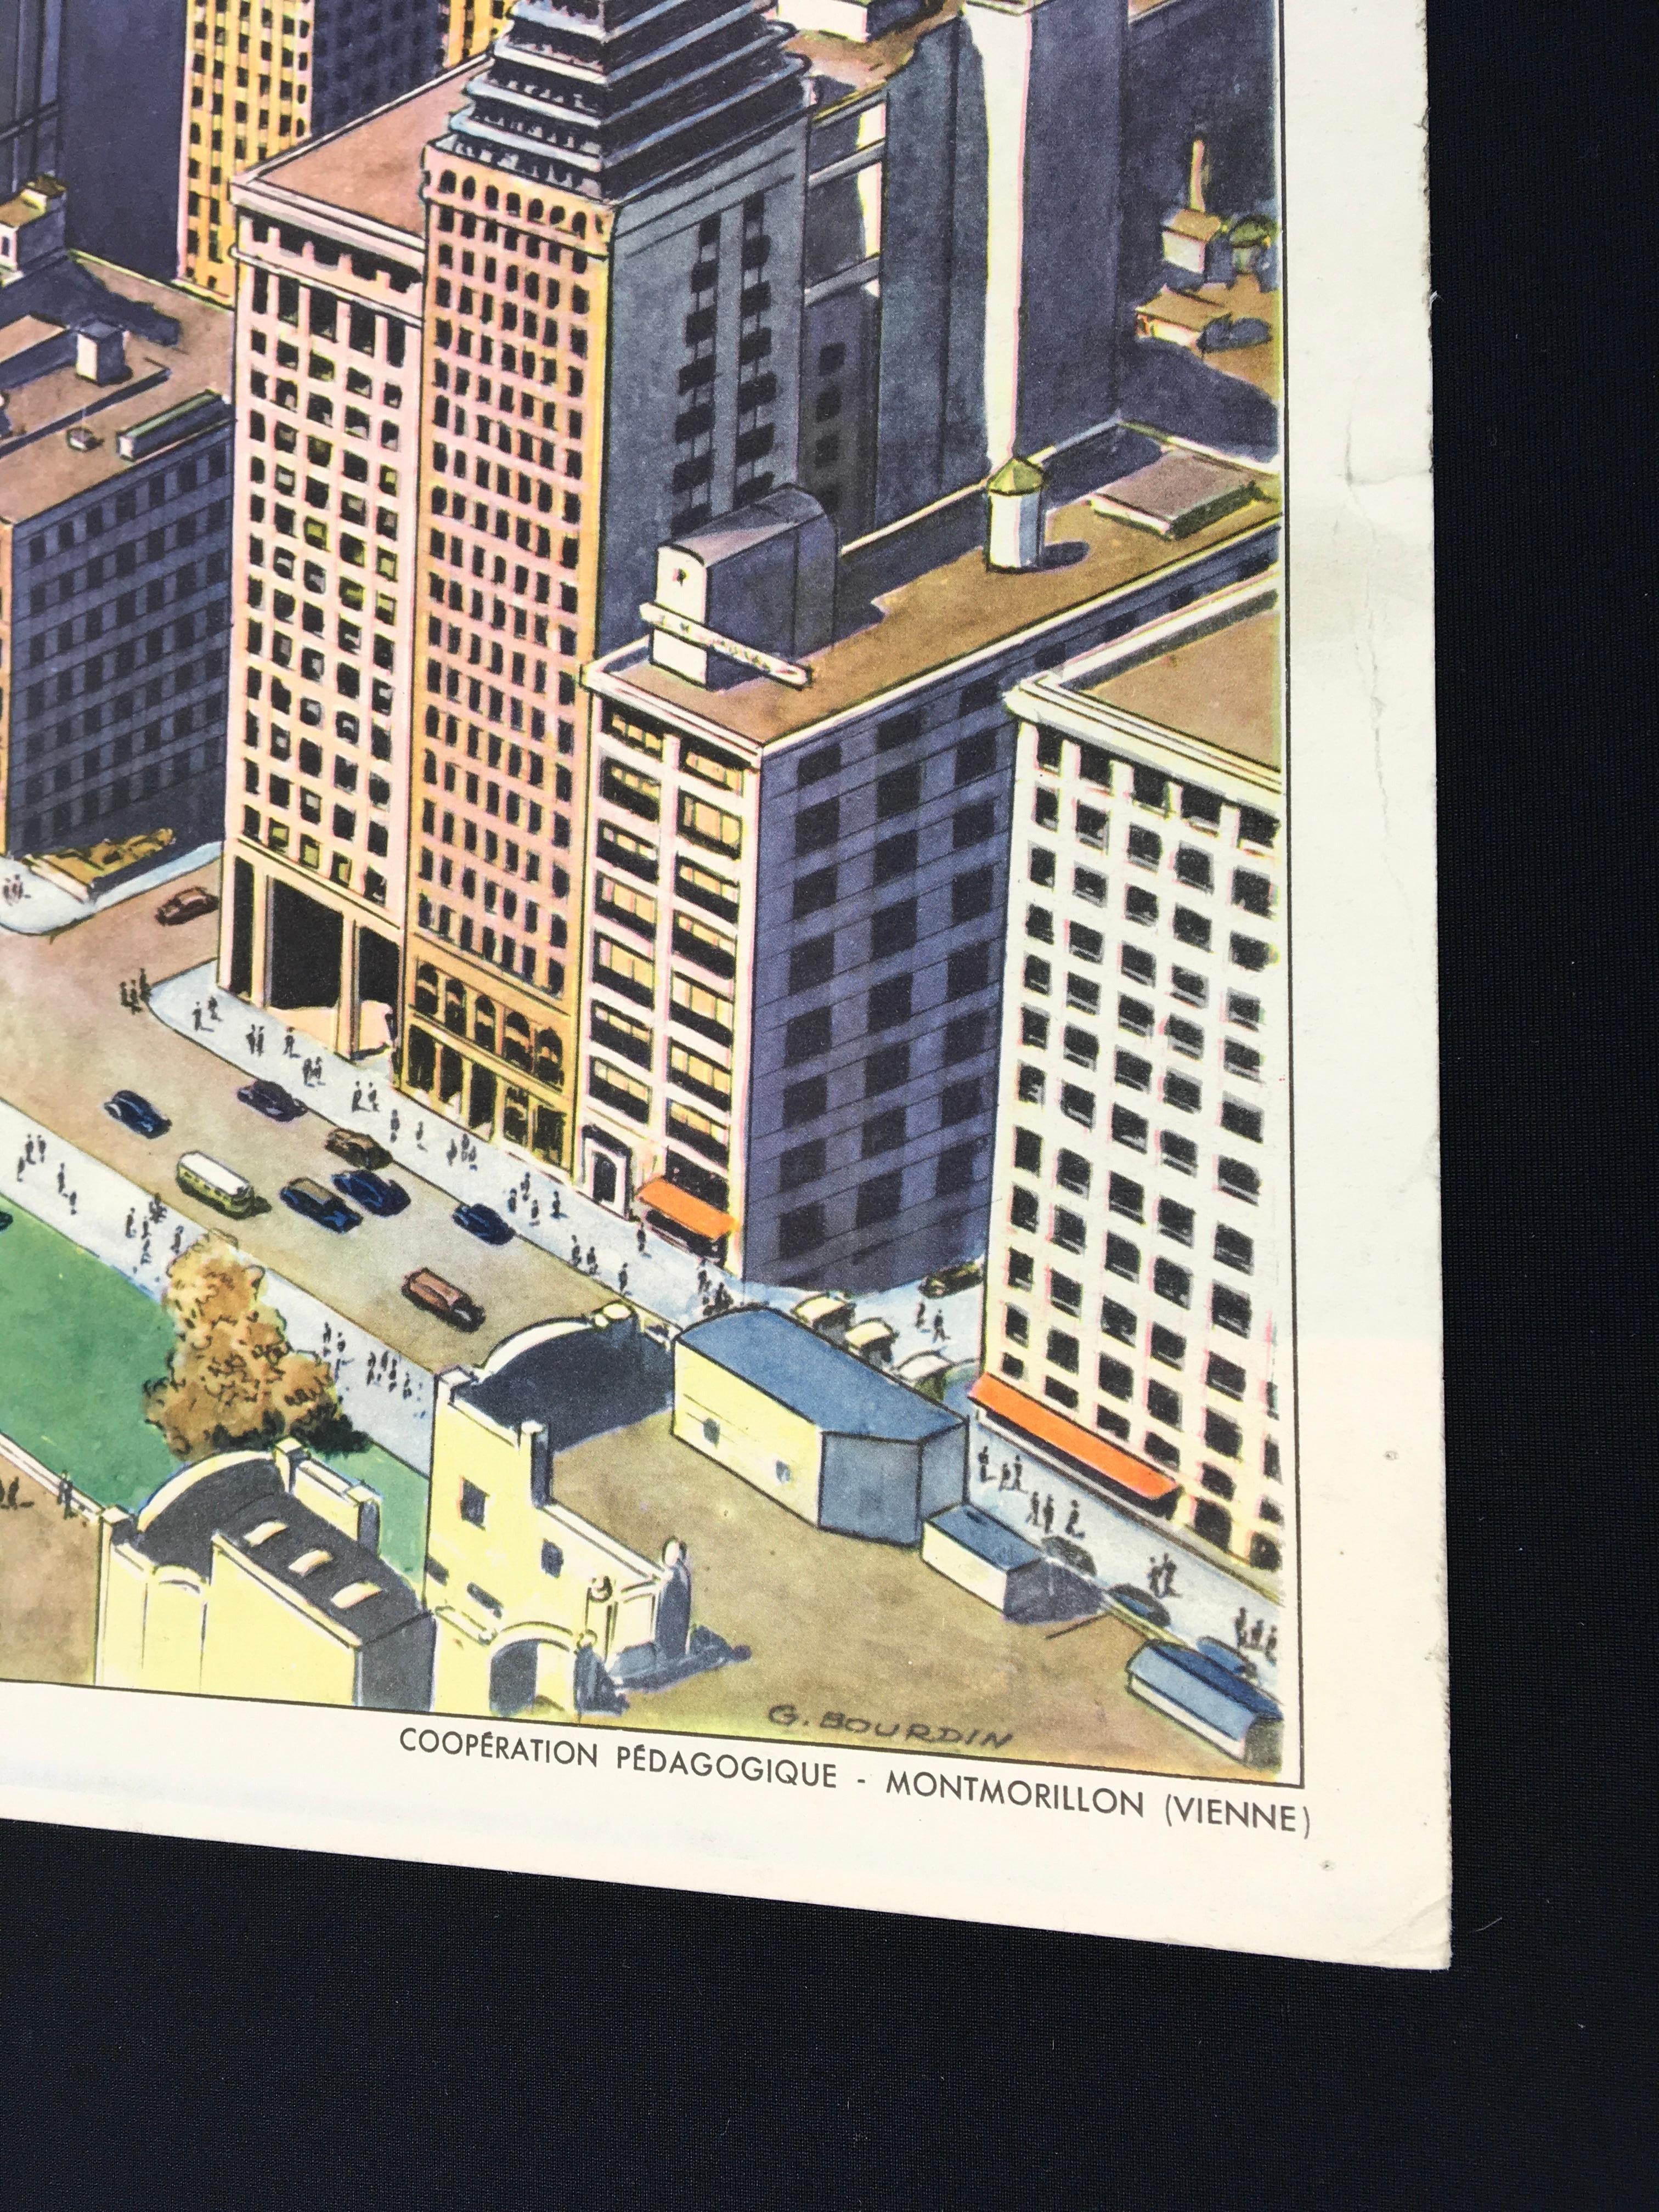 Vintage Schulposter - Schulkarte von Rossignol Frankreich. 
Wunderschönes Design eines Viertels voller Wolkenkratzer. Sie haben einen tollen Blick auf das Meer, die Stadt und den Park.
Dieses alte Lehrmaterial ist aus dickem Papier und sehr